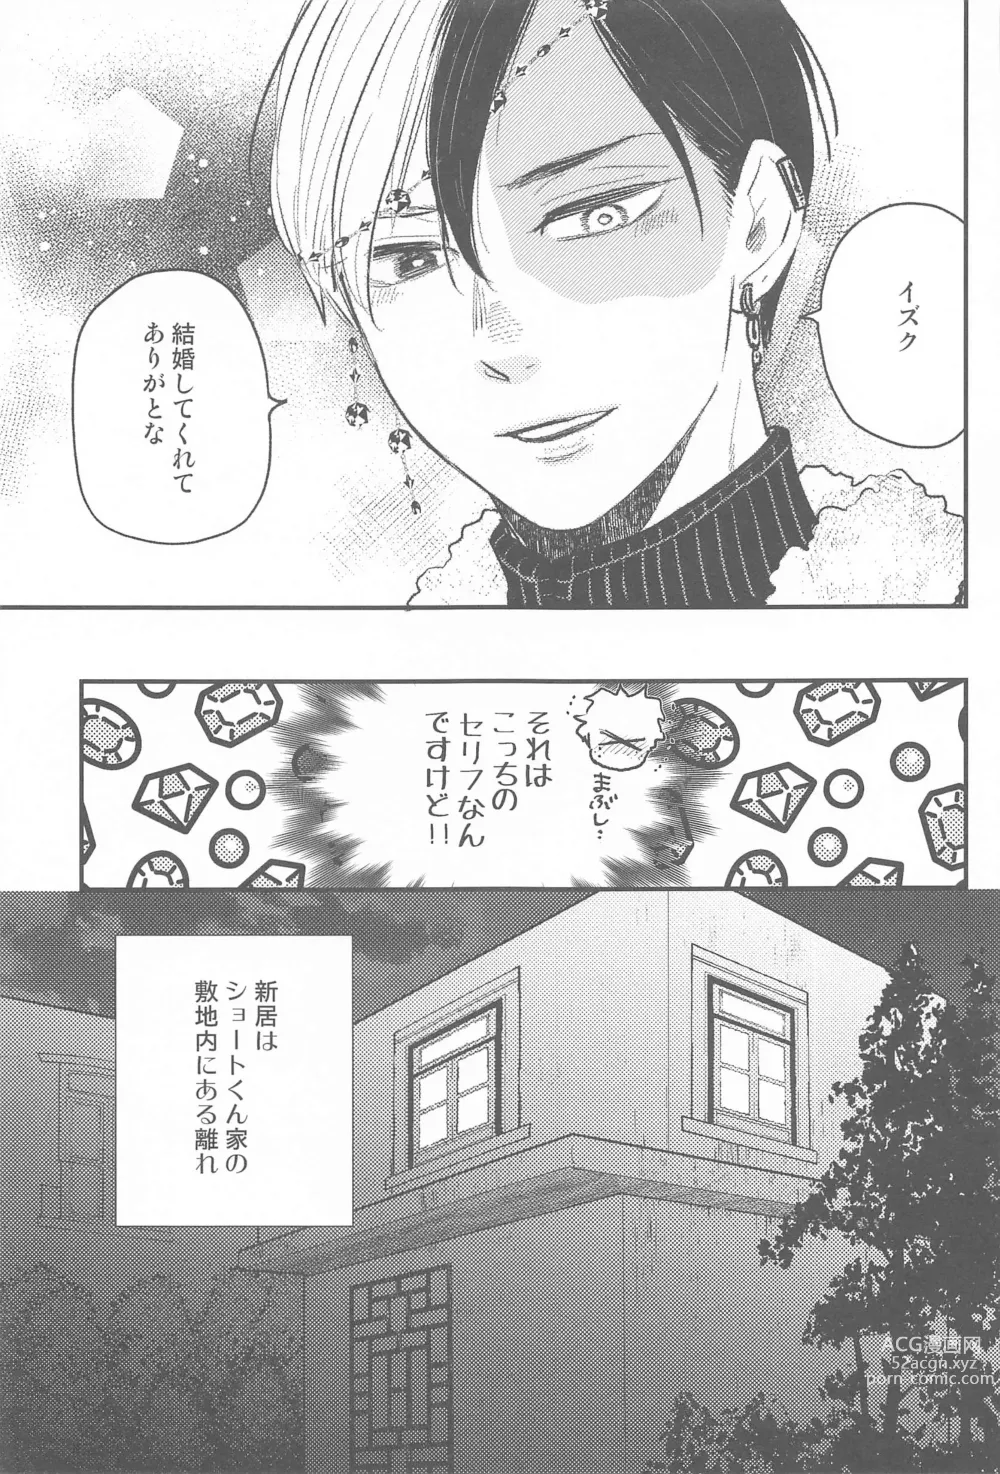 Page 4 of doujinshi Tsuki to Taiyou Shinkon Hen